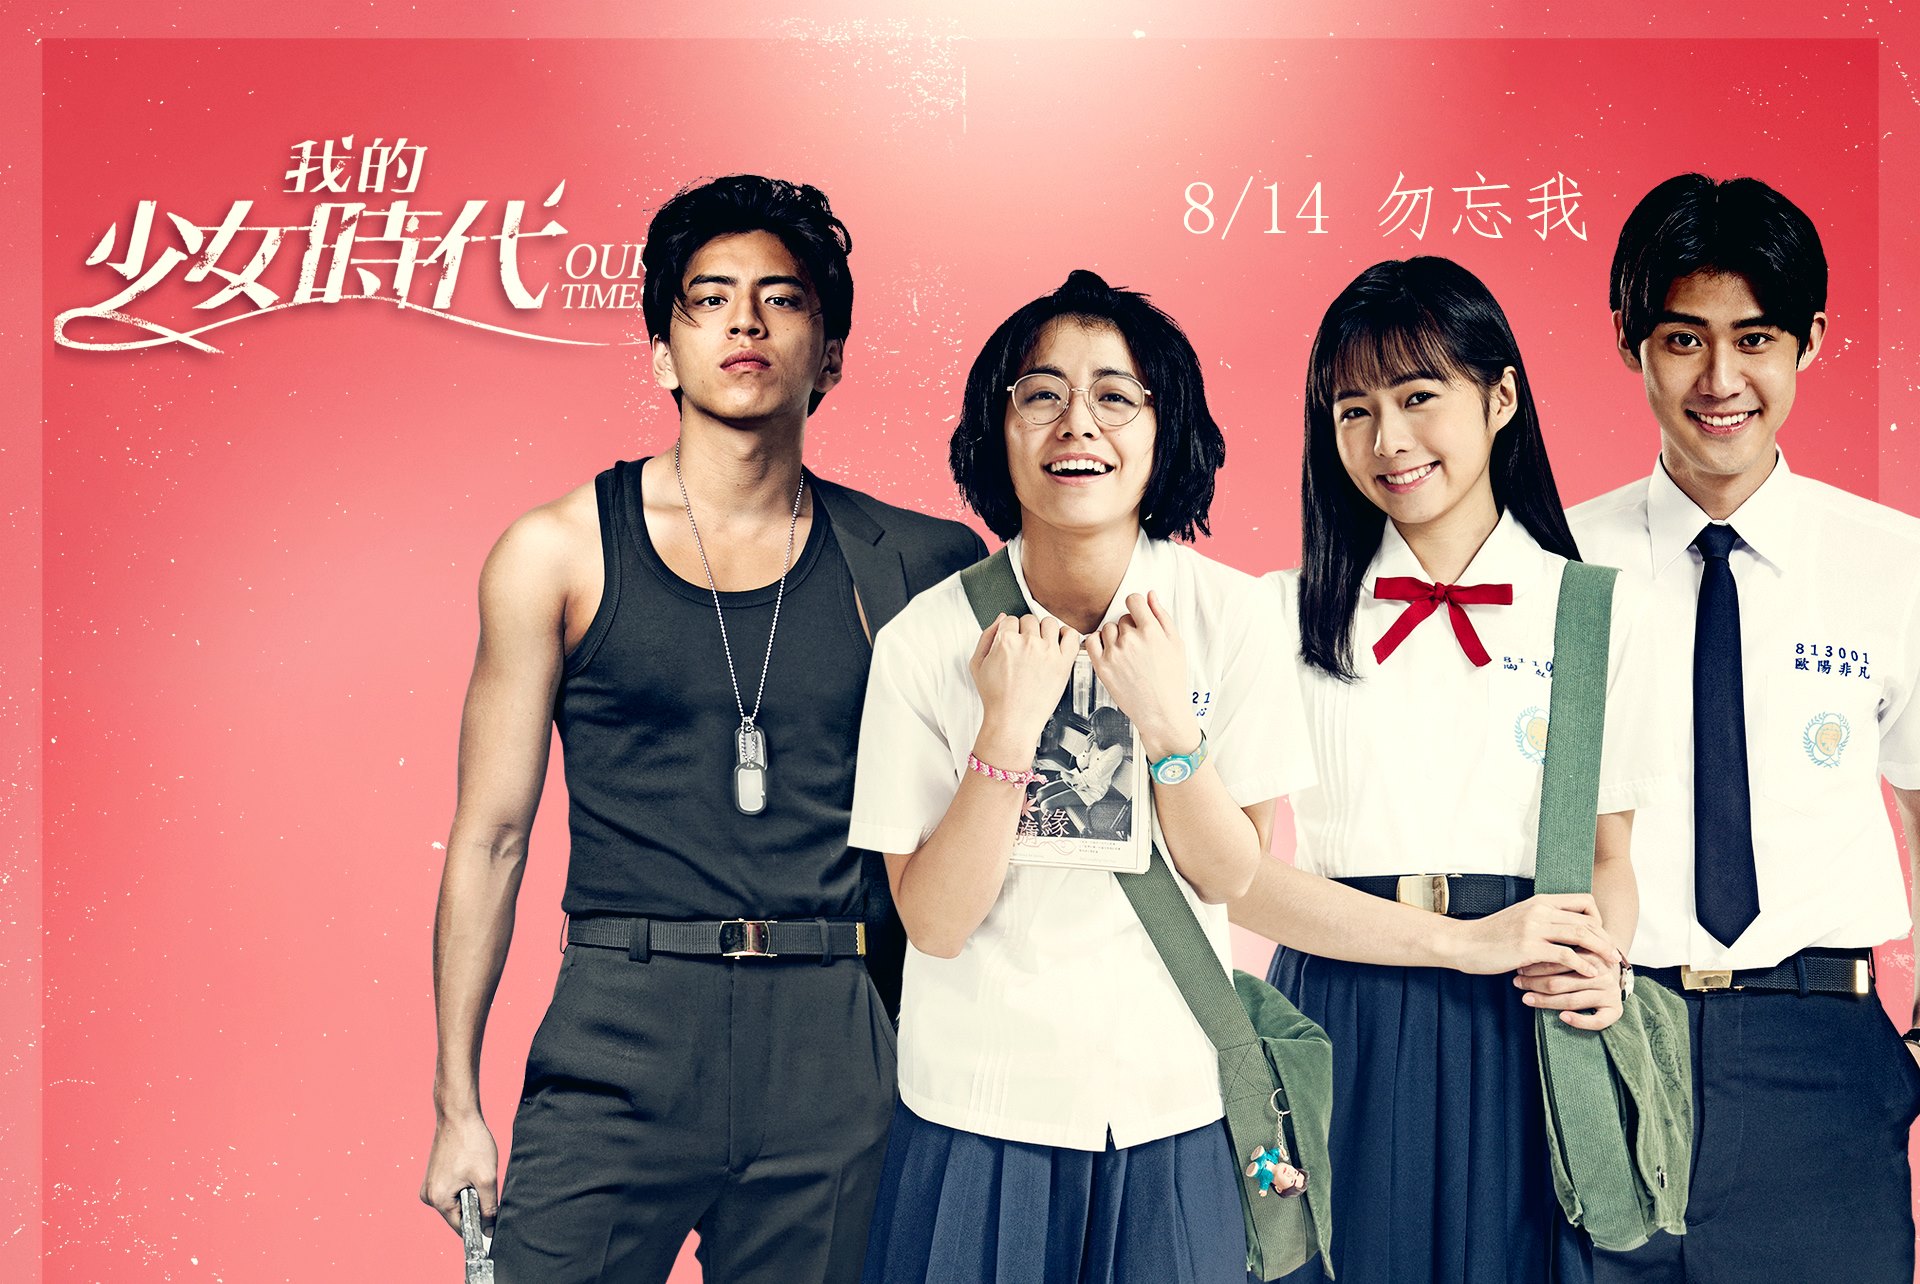 台湾の王道の恋愛コメディ映画「我的小年时代」